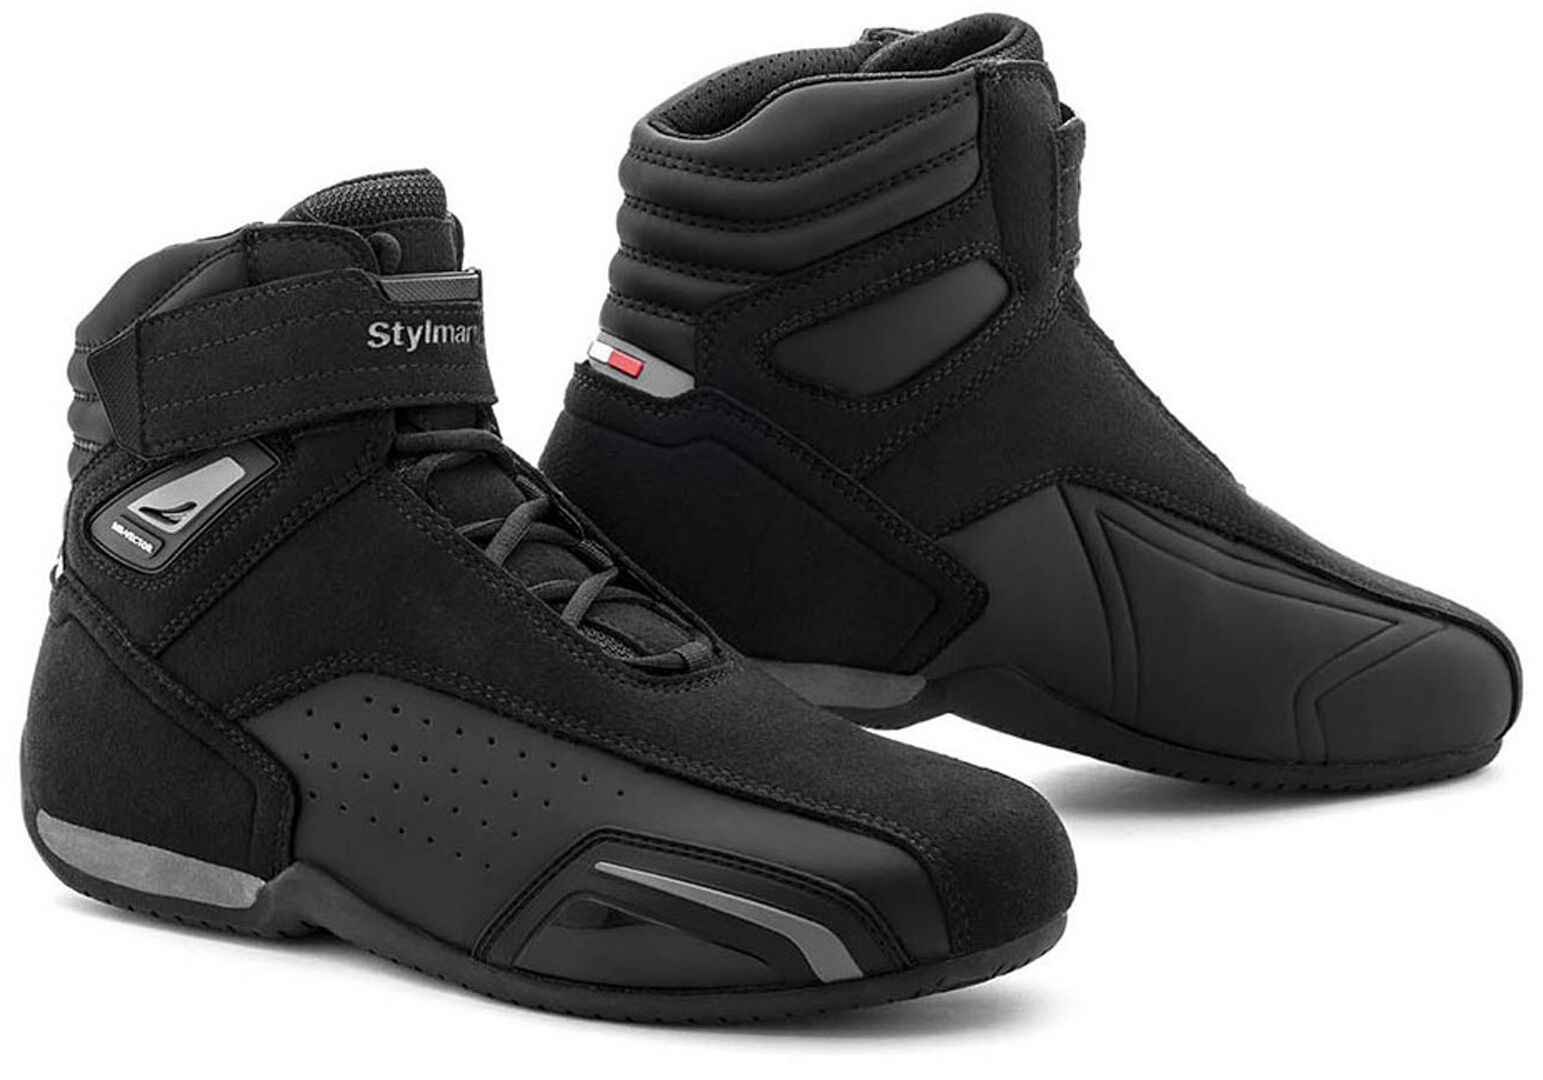 Stylmartin Vector Air Zapatos de moto - Negro (44)